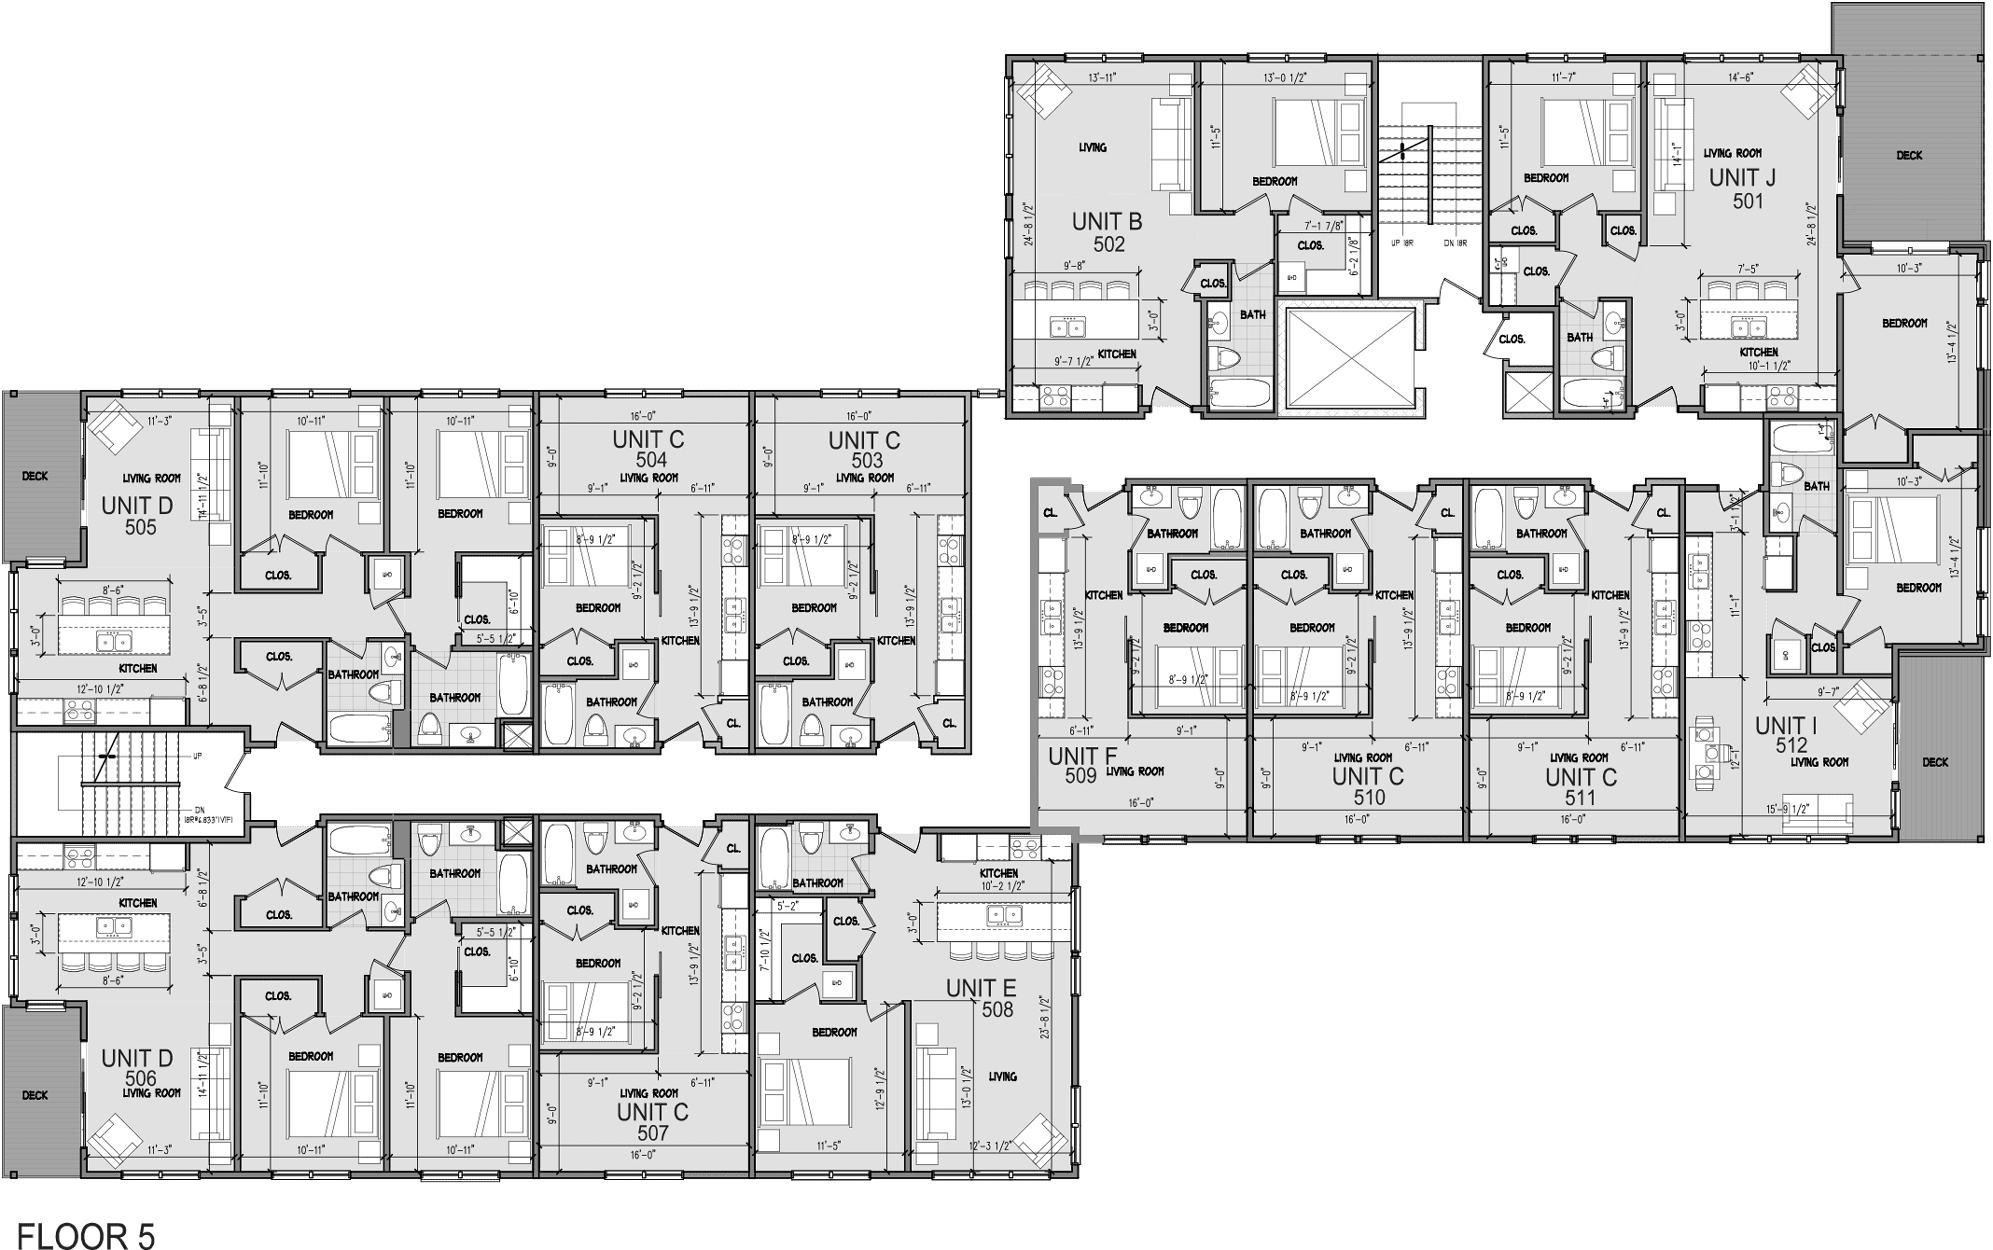 Level 5 Floor Plan